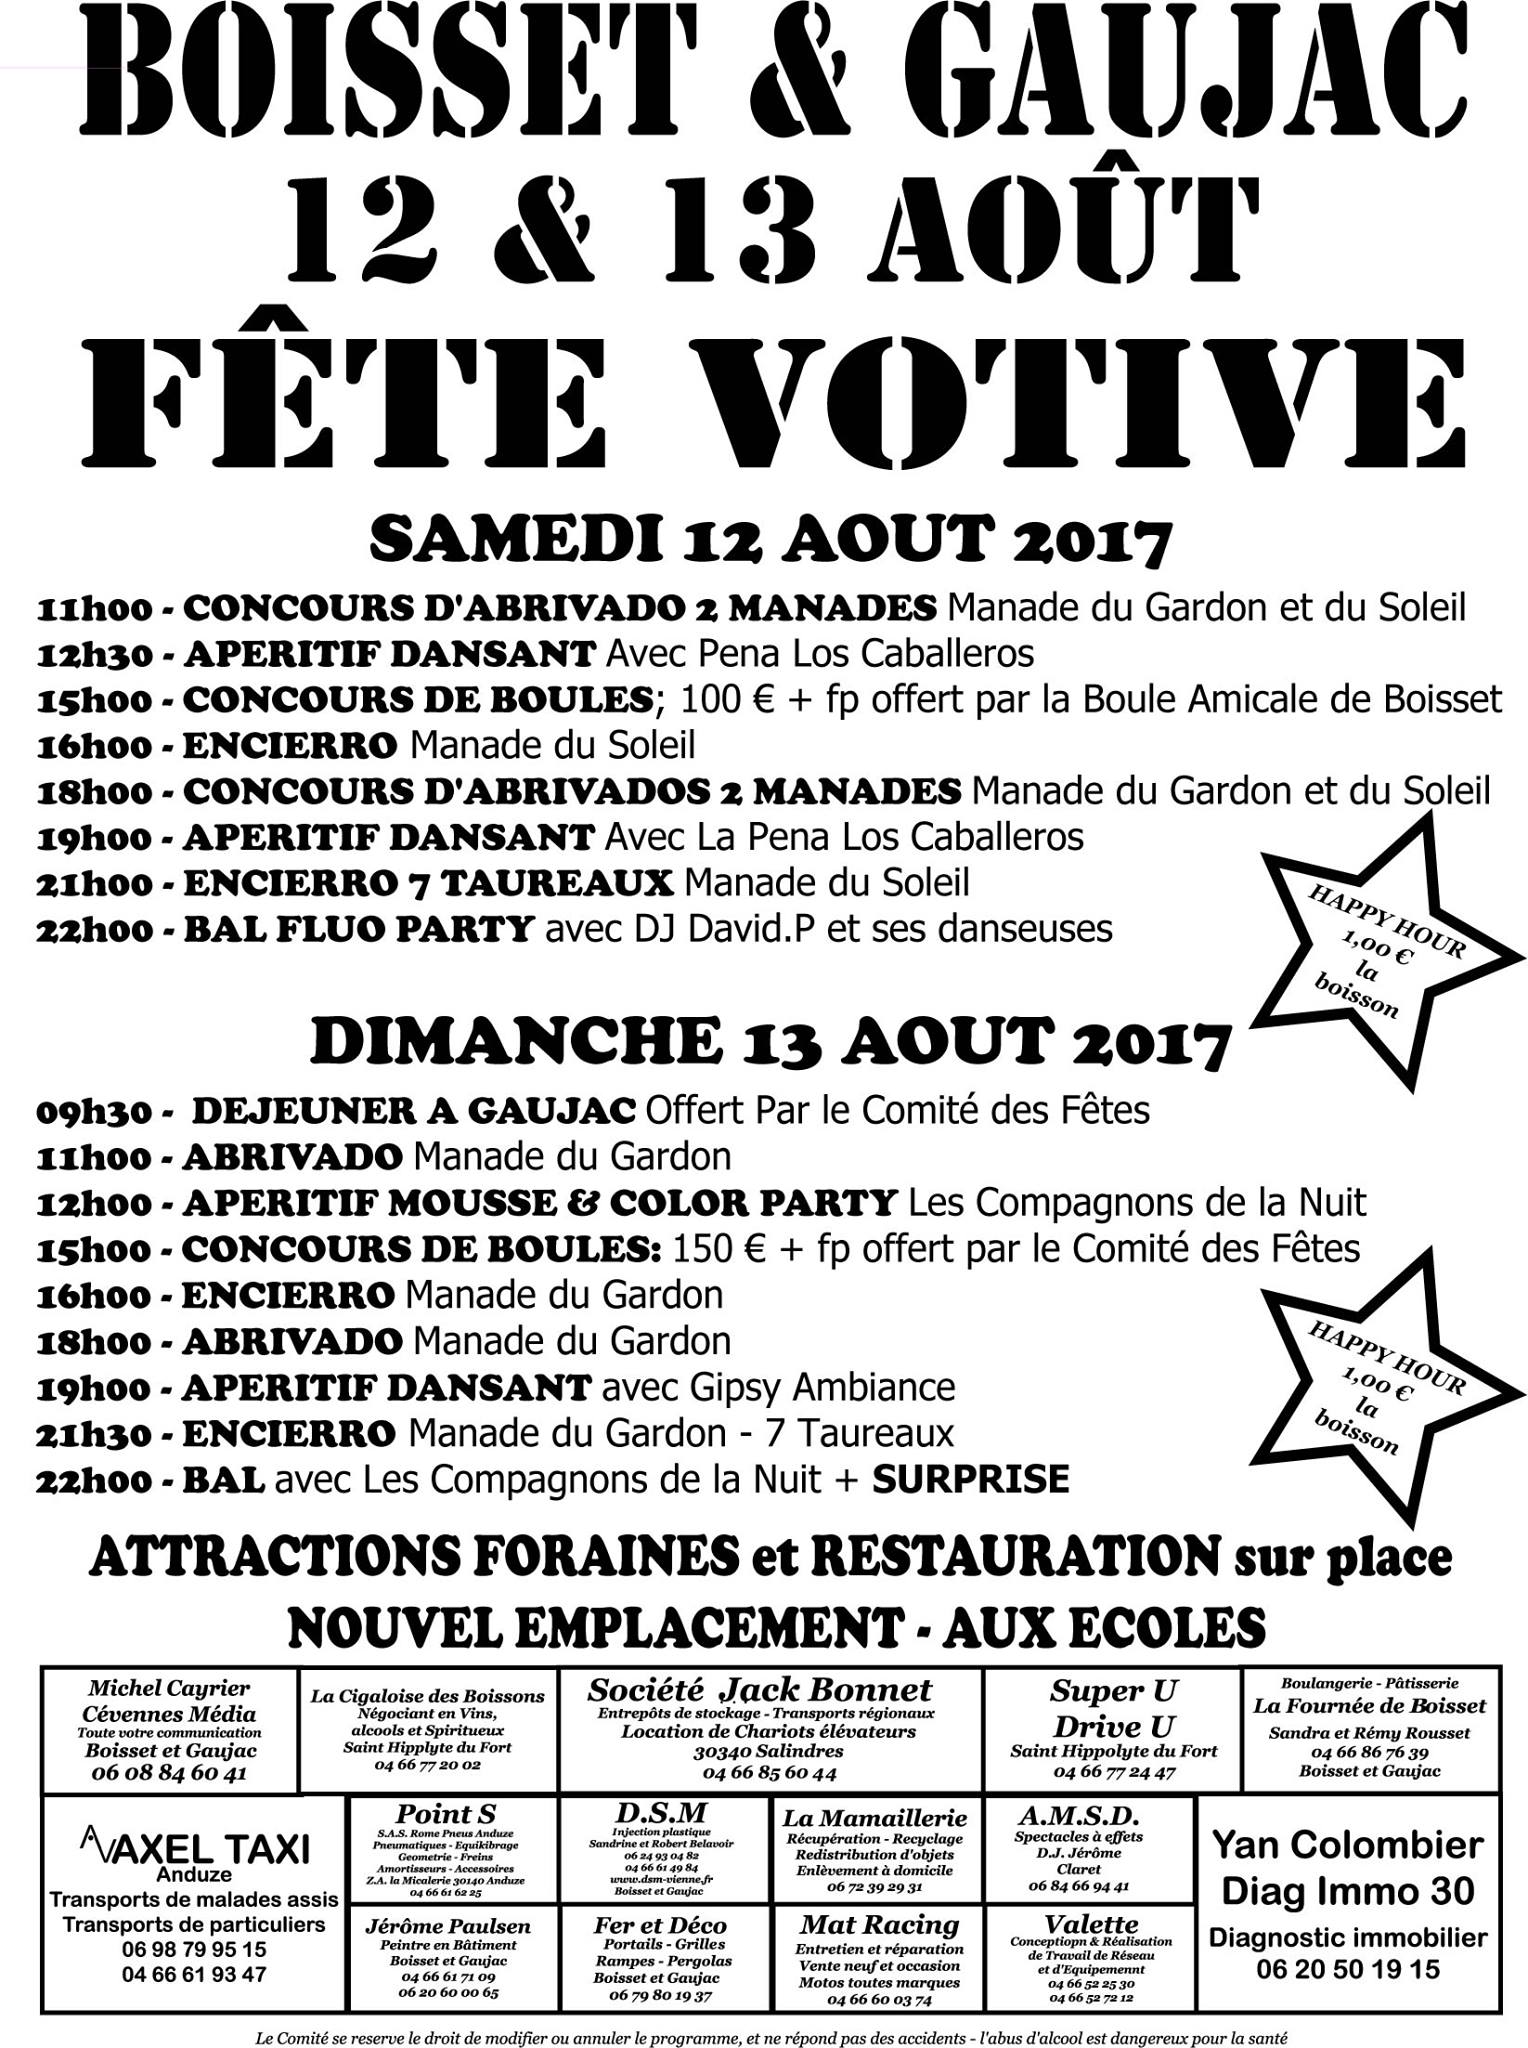 boisset-et-gaujac-votive-2017